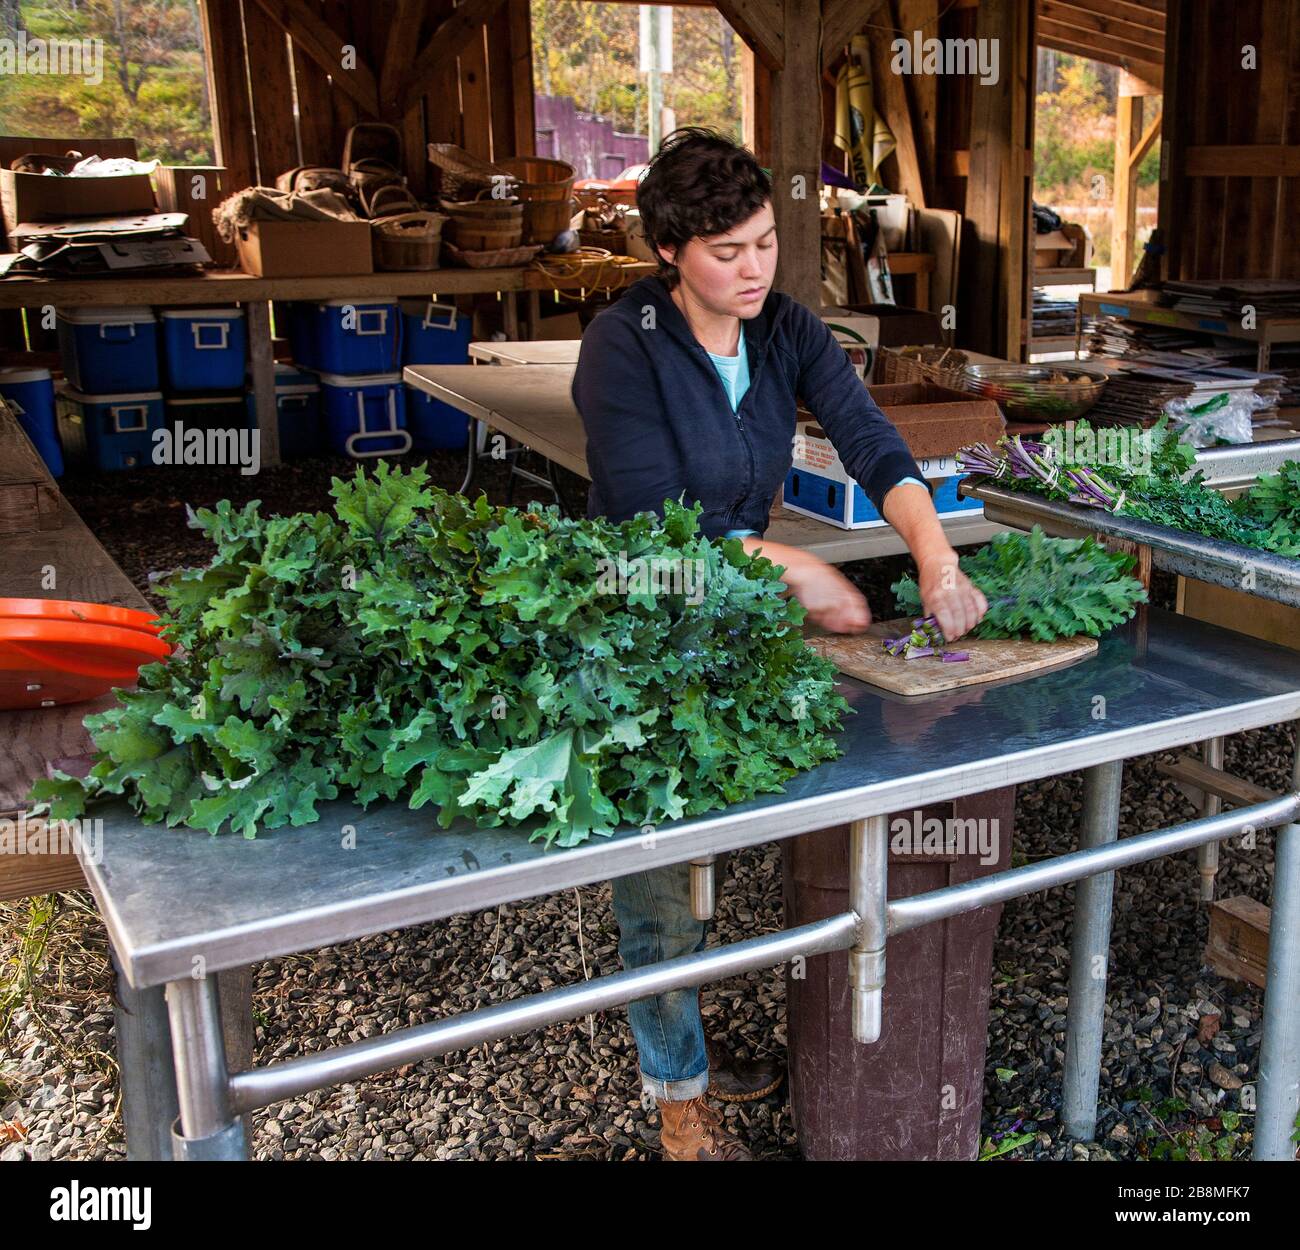 Donna lavoratore agricolo pulizia green per vendere Foto Stock